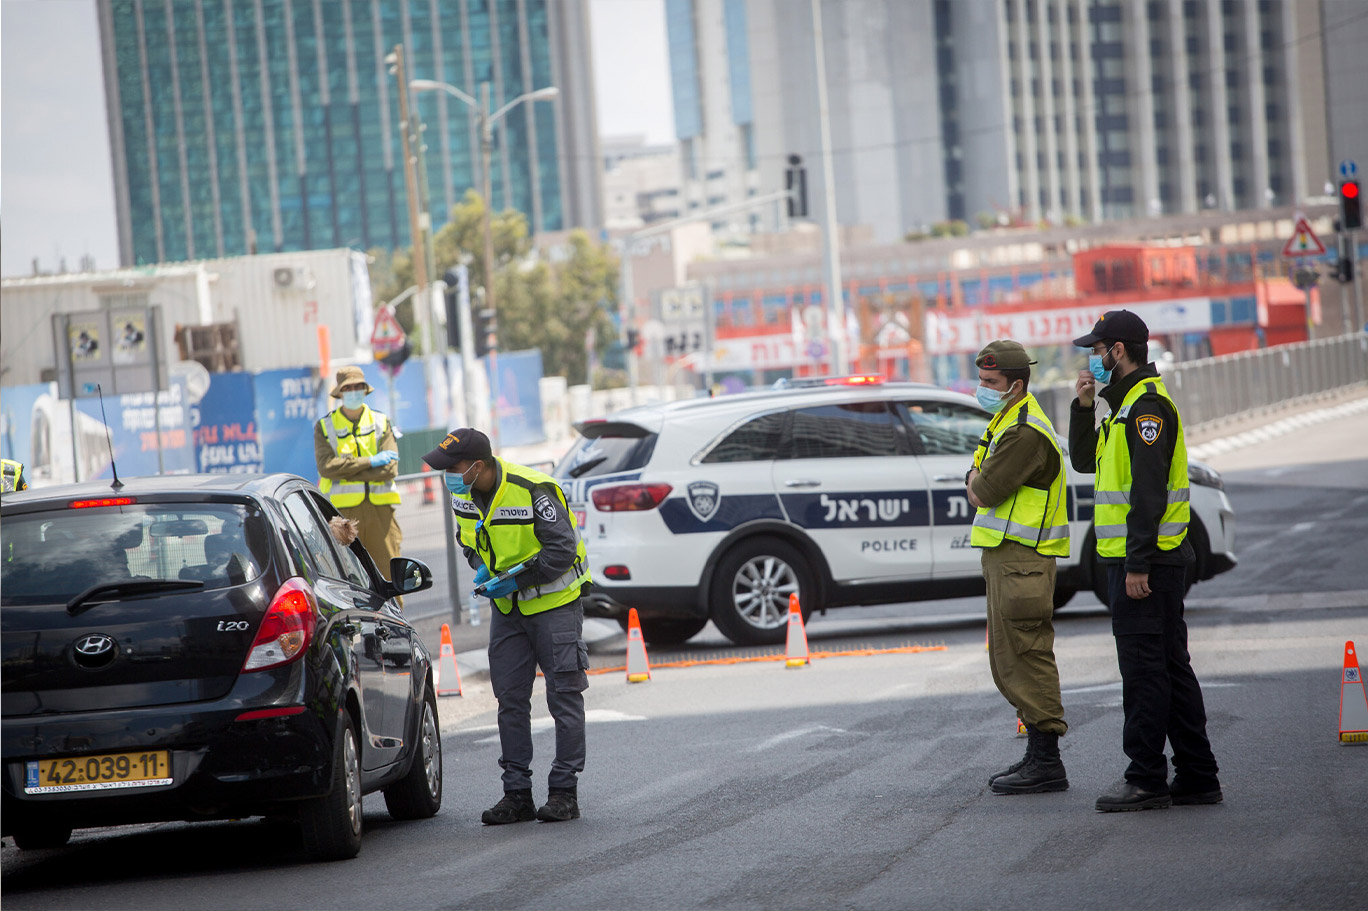 الشرطة الإسرائيلية تفرض إغلاقًا بسبب تفشي فيروس كورونا ، شوهد عند حاجز على طريق بيغن في تل أبيب ، 29 من نيسان 2020 (Miriam Alster / Flash90)